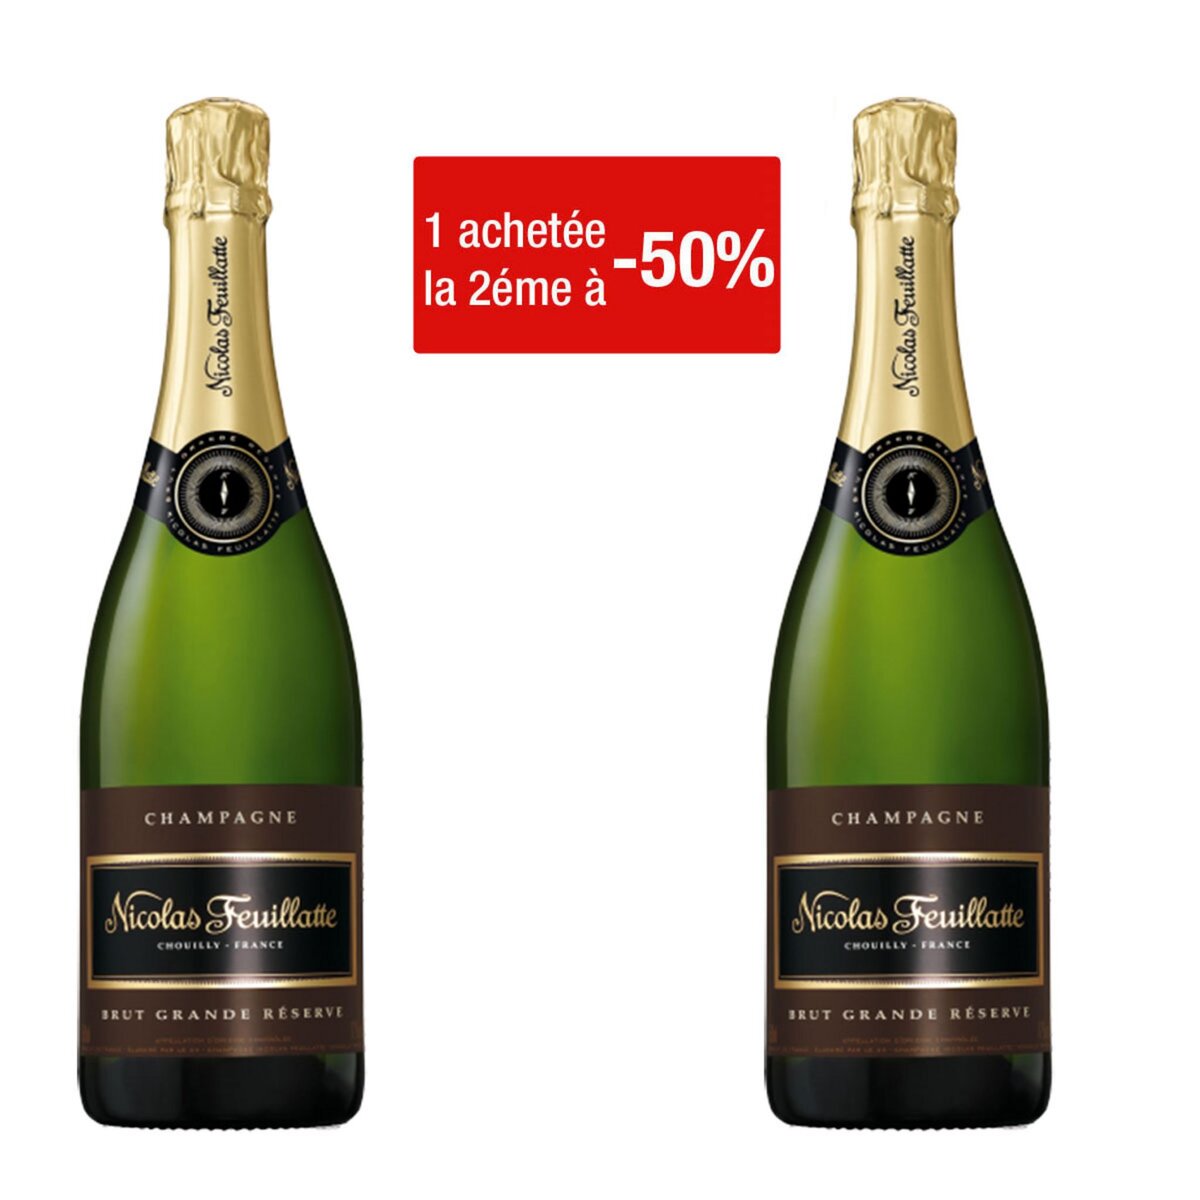 Champagne Nicolas Feuillatte Brut Grande Réserve